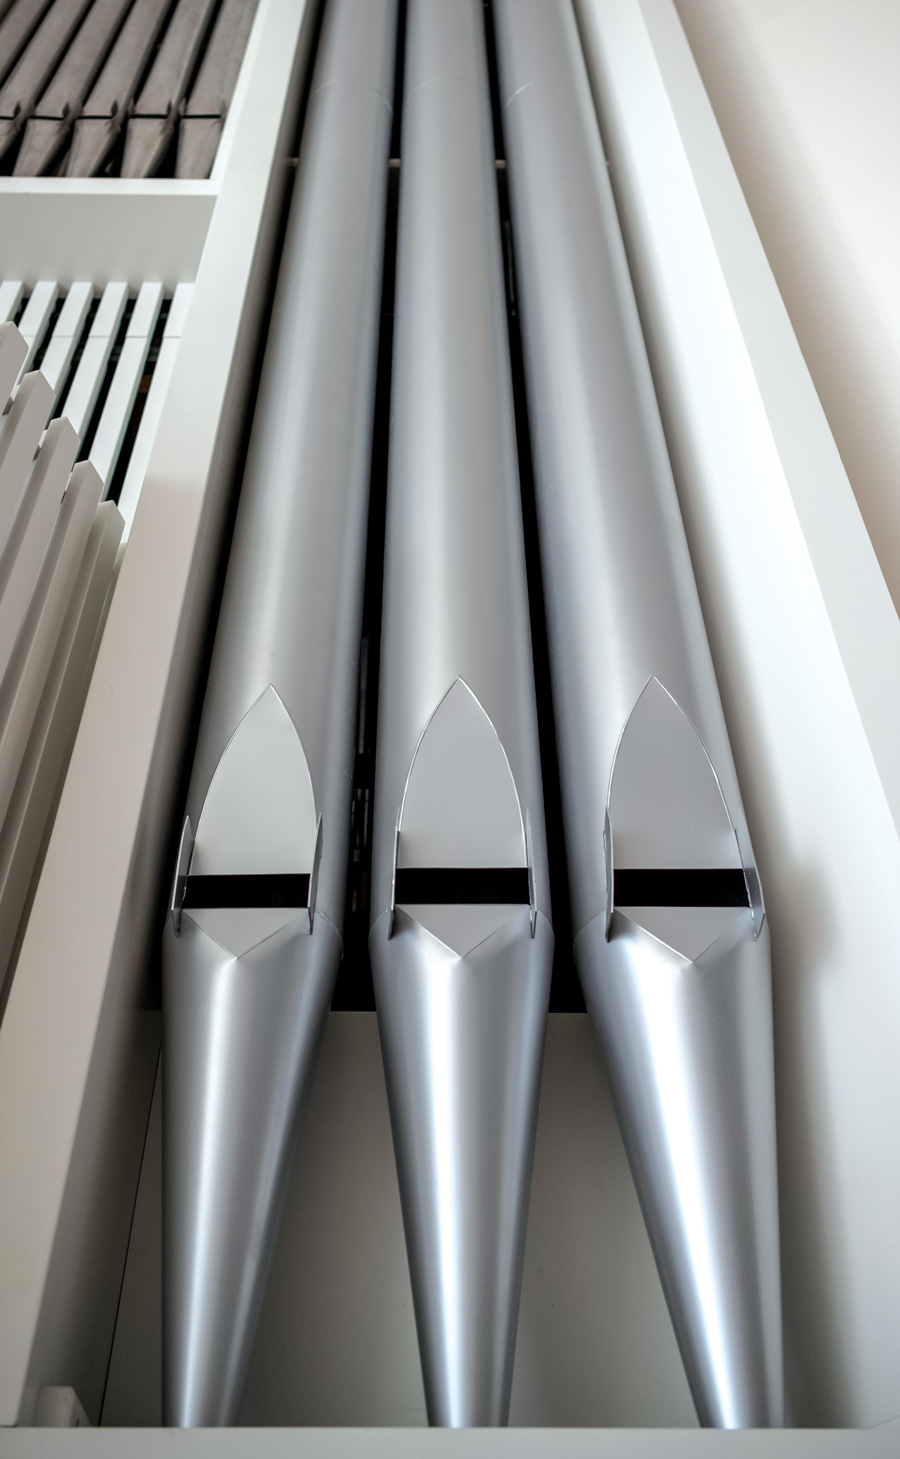 A closeup of three silver organ pipes.